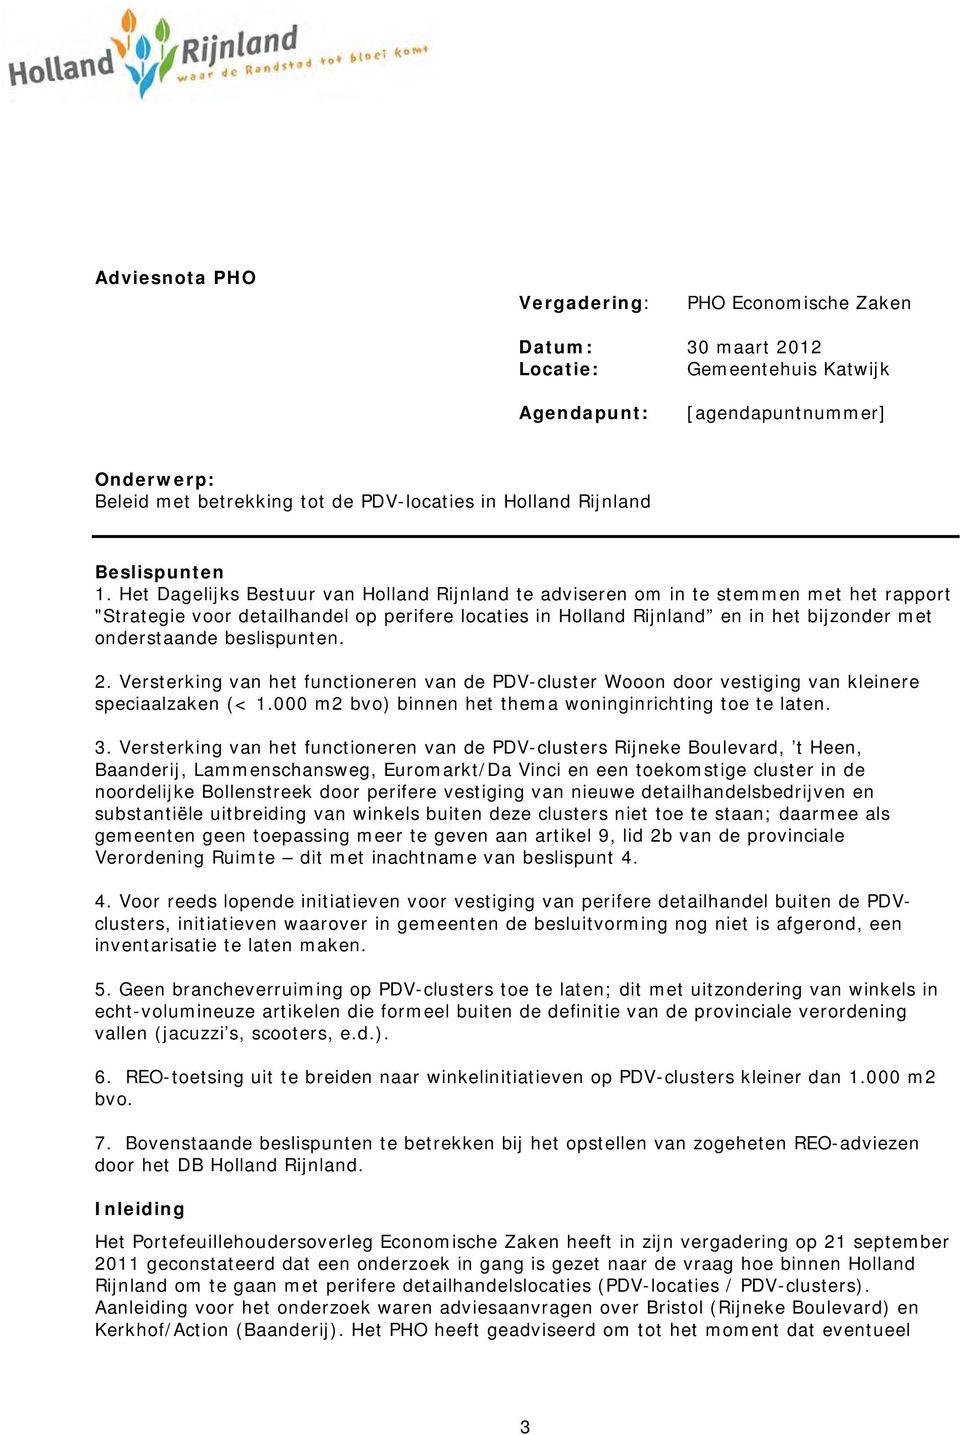 Het Dagelijks Bestuur van Holland Rijnland te adviseren om in te stemmen met het rapport "Strategie voor detailhandel op perifere locaties in Holland Rijnland en in het bijzonder met onderstaande